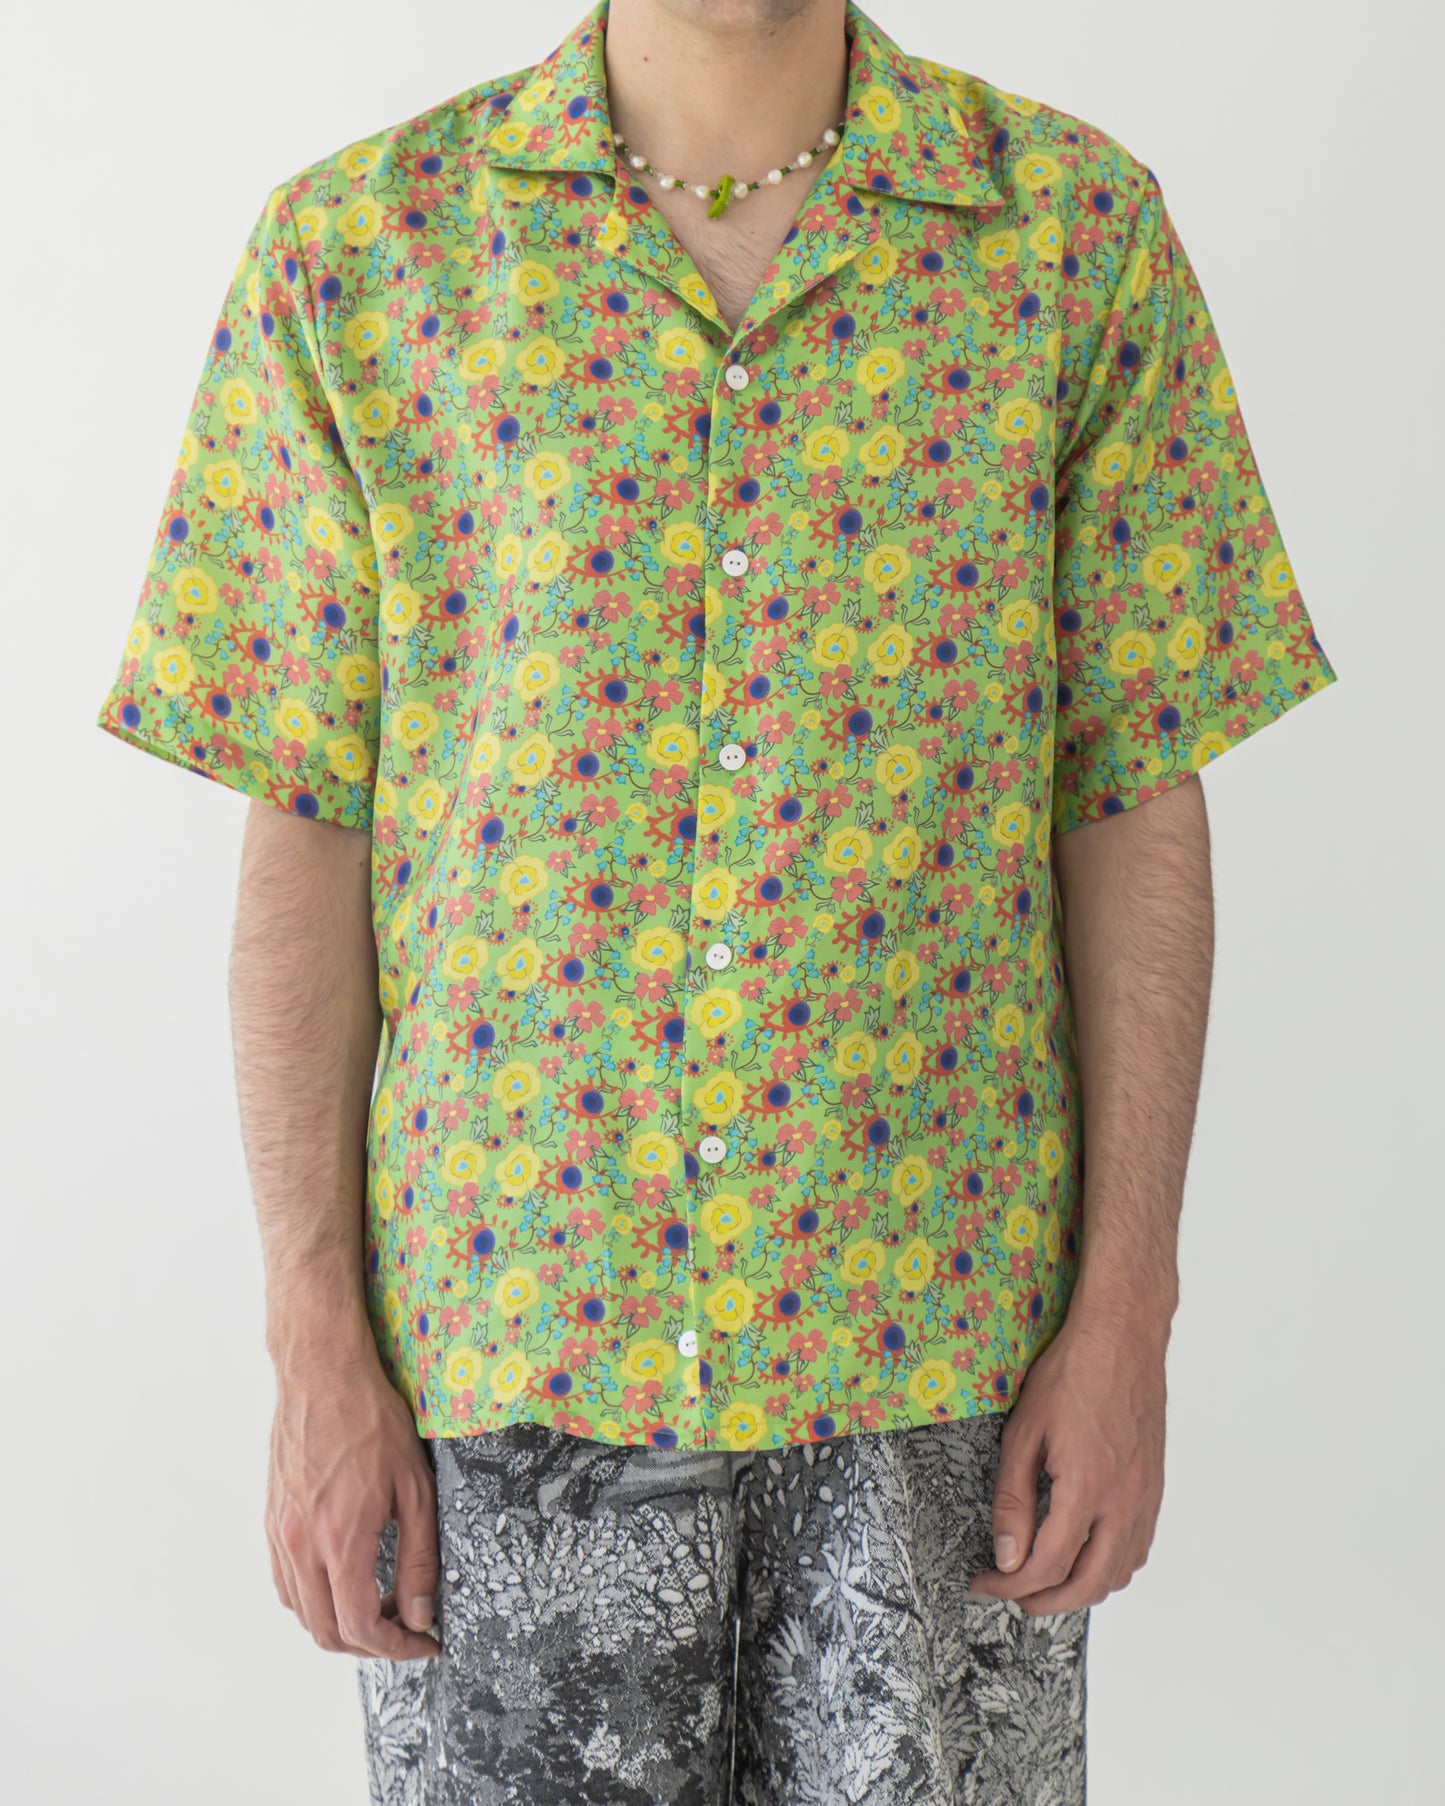 'Dainty floral' Silk bowling shirt